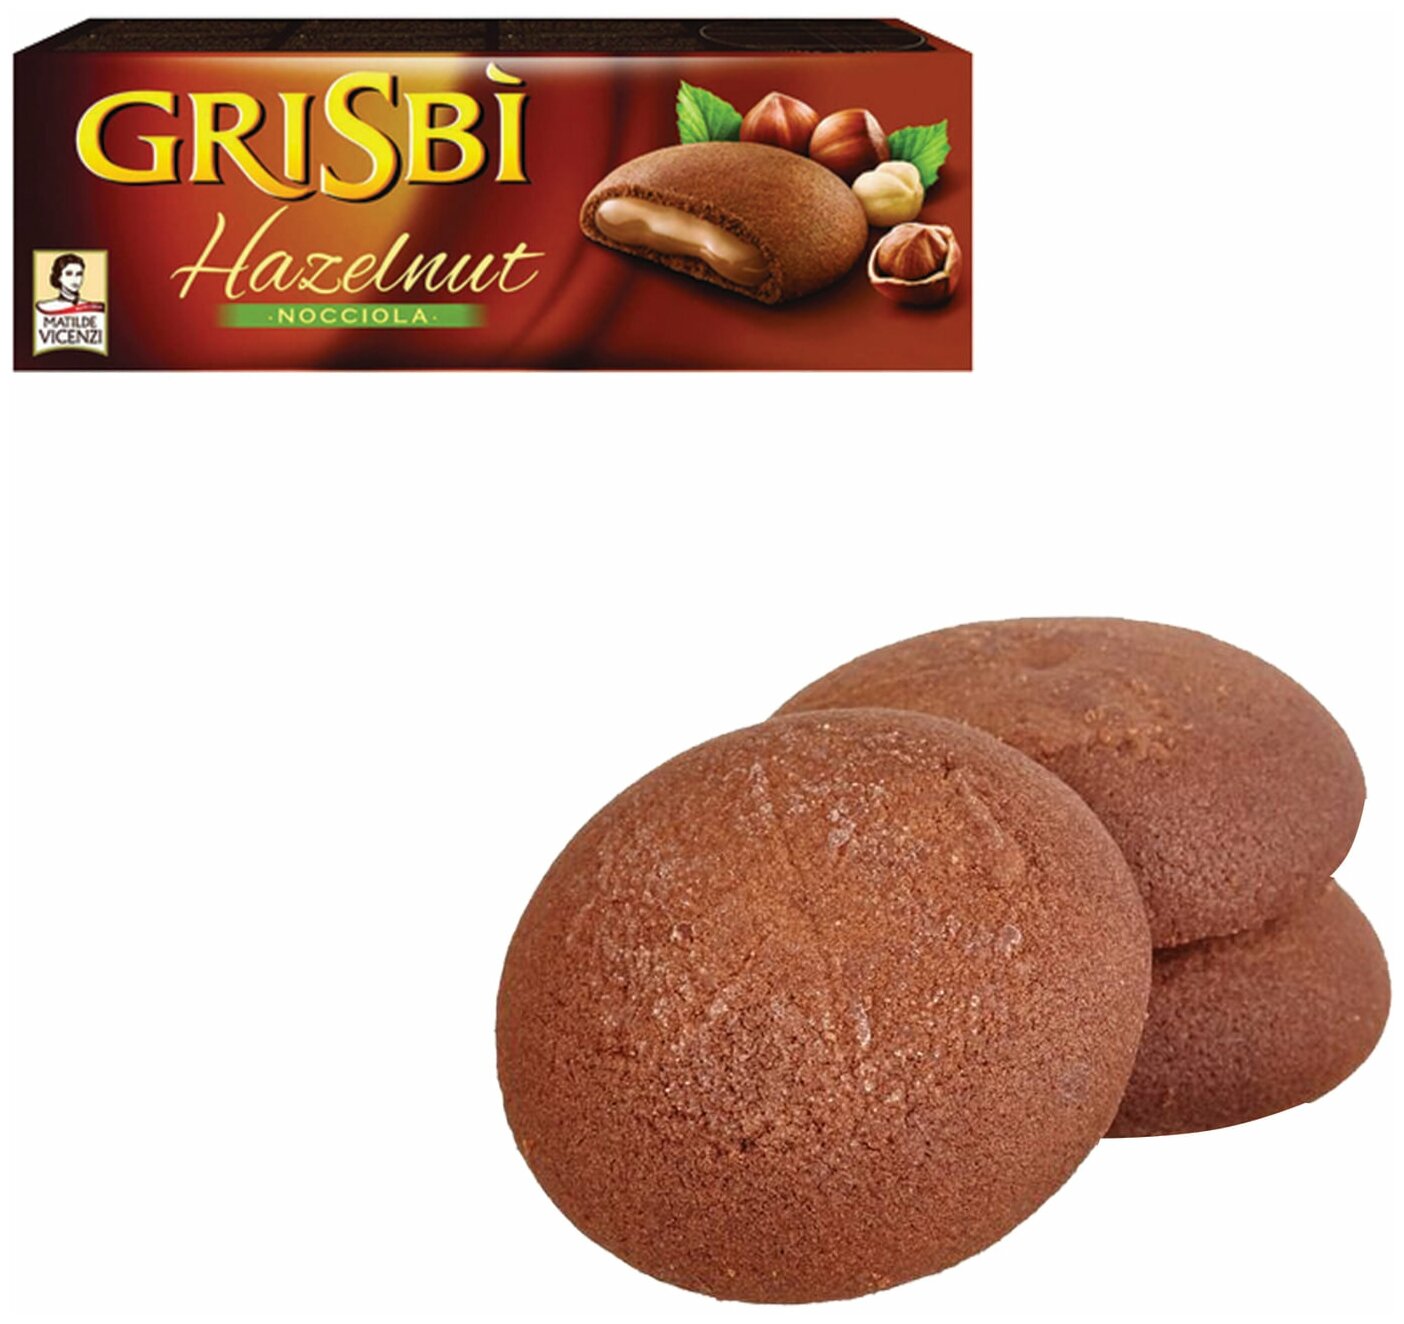 Печенье GRISBI (Гризби) «Hazelnut», с начинкой из орехового крема, 150 г, Италия